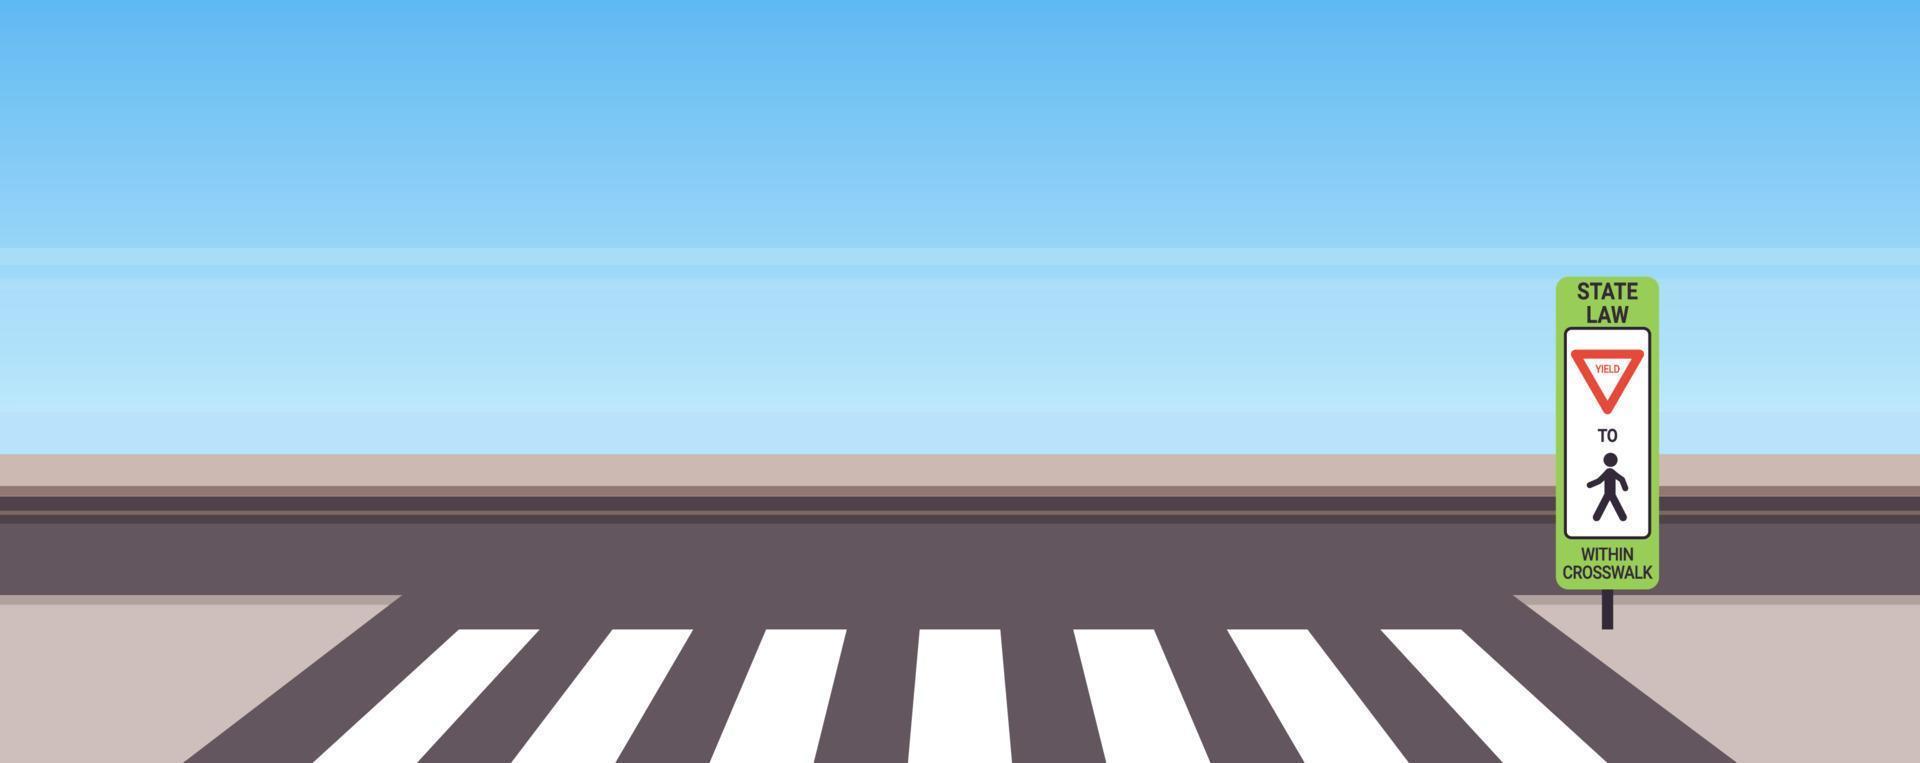 staatswet stop voor voetgangers in zebrapad teken en verkeersborden op stadsweg geen mensen concept platte vectorillustratie. vector